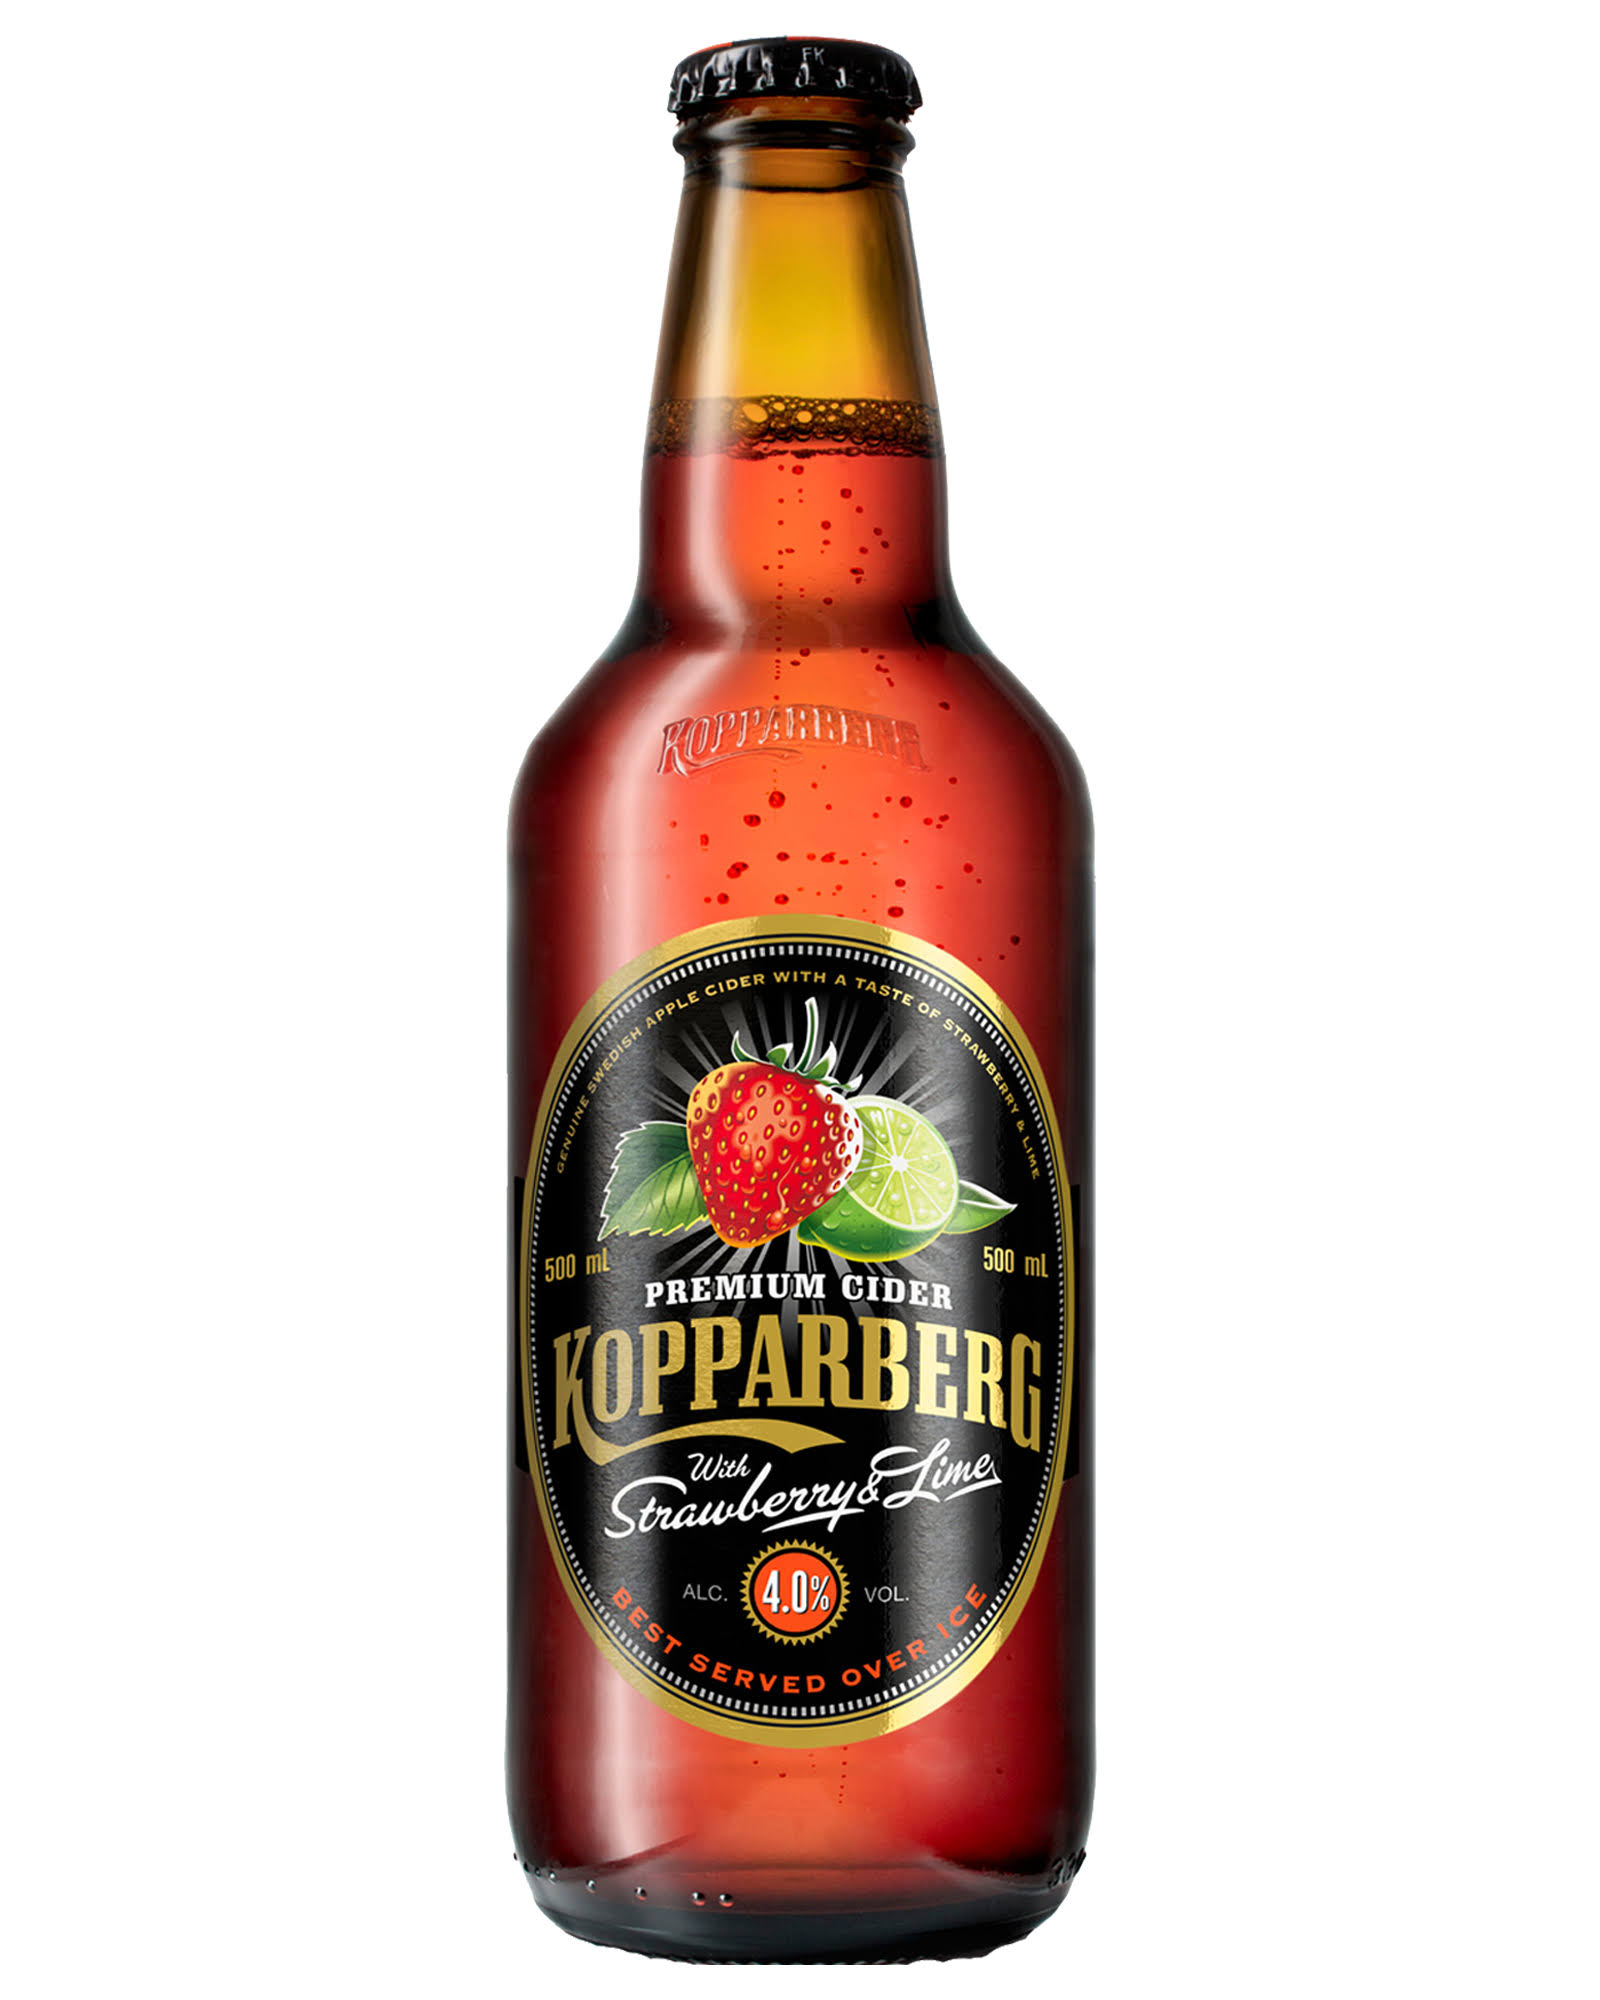 Kopparberg Premium Cider - Strawberry & Lime